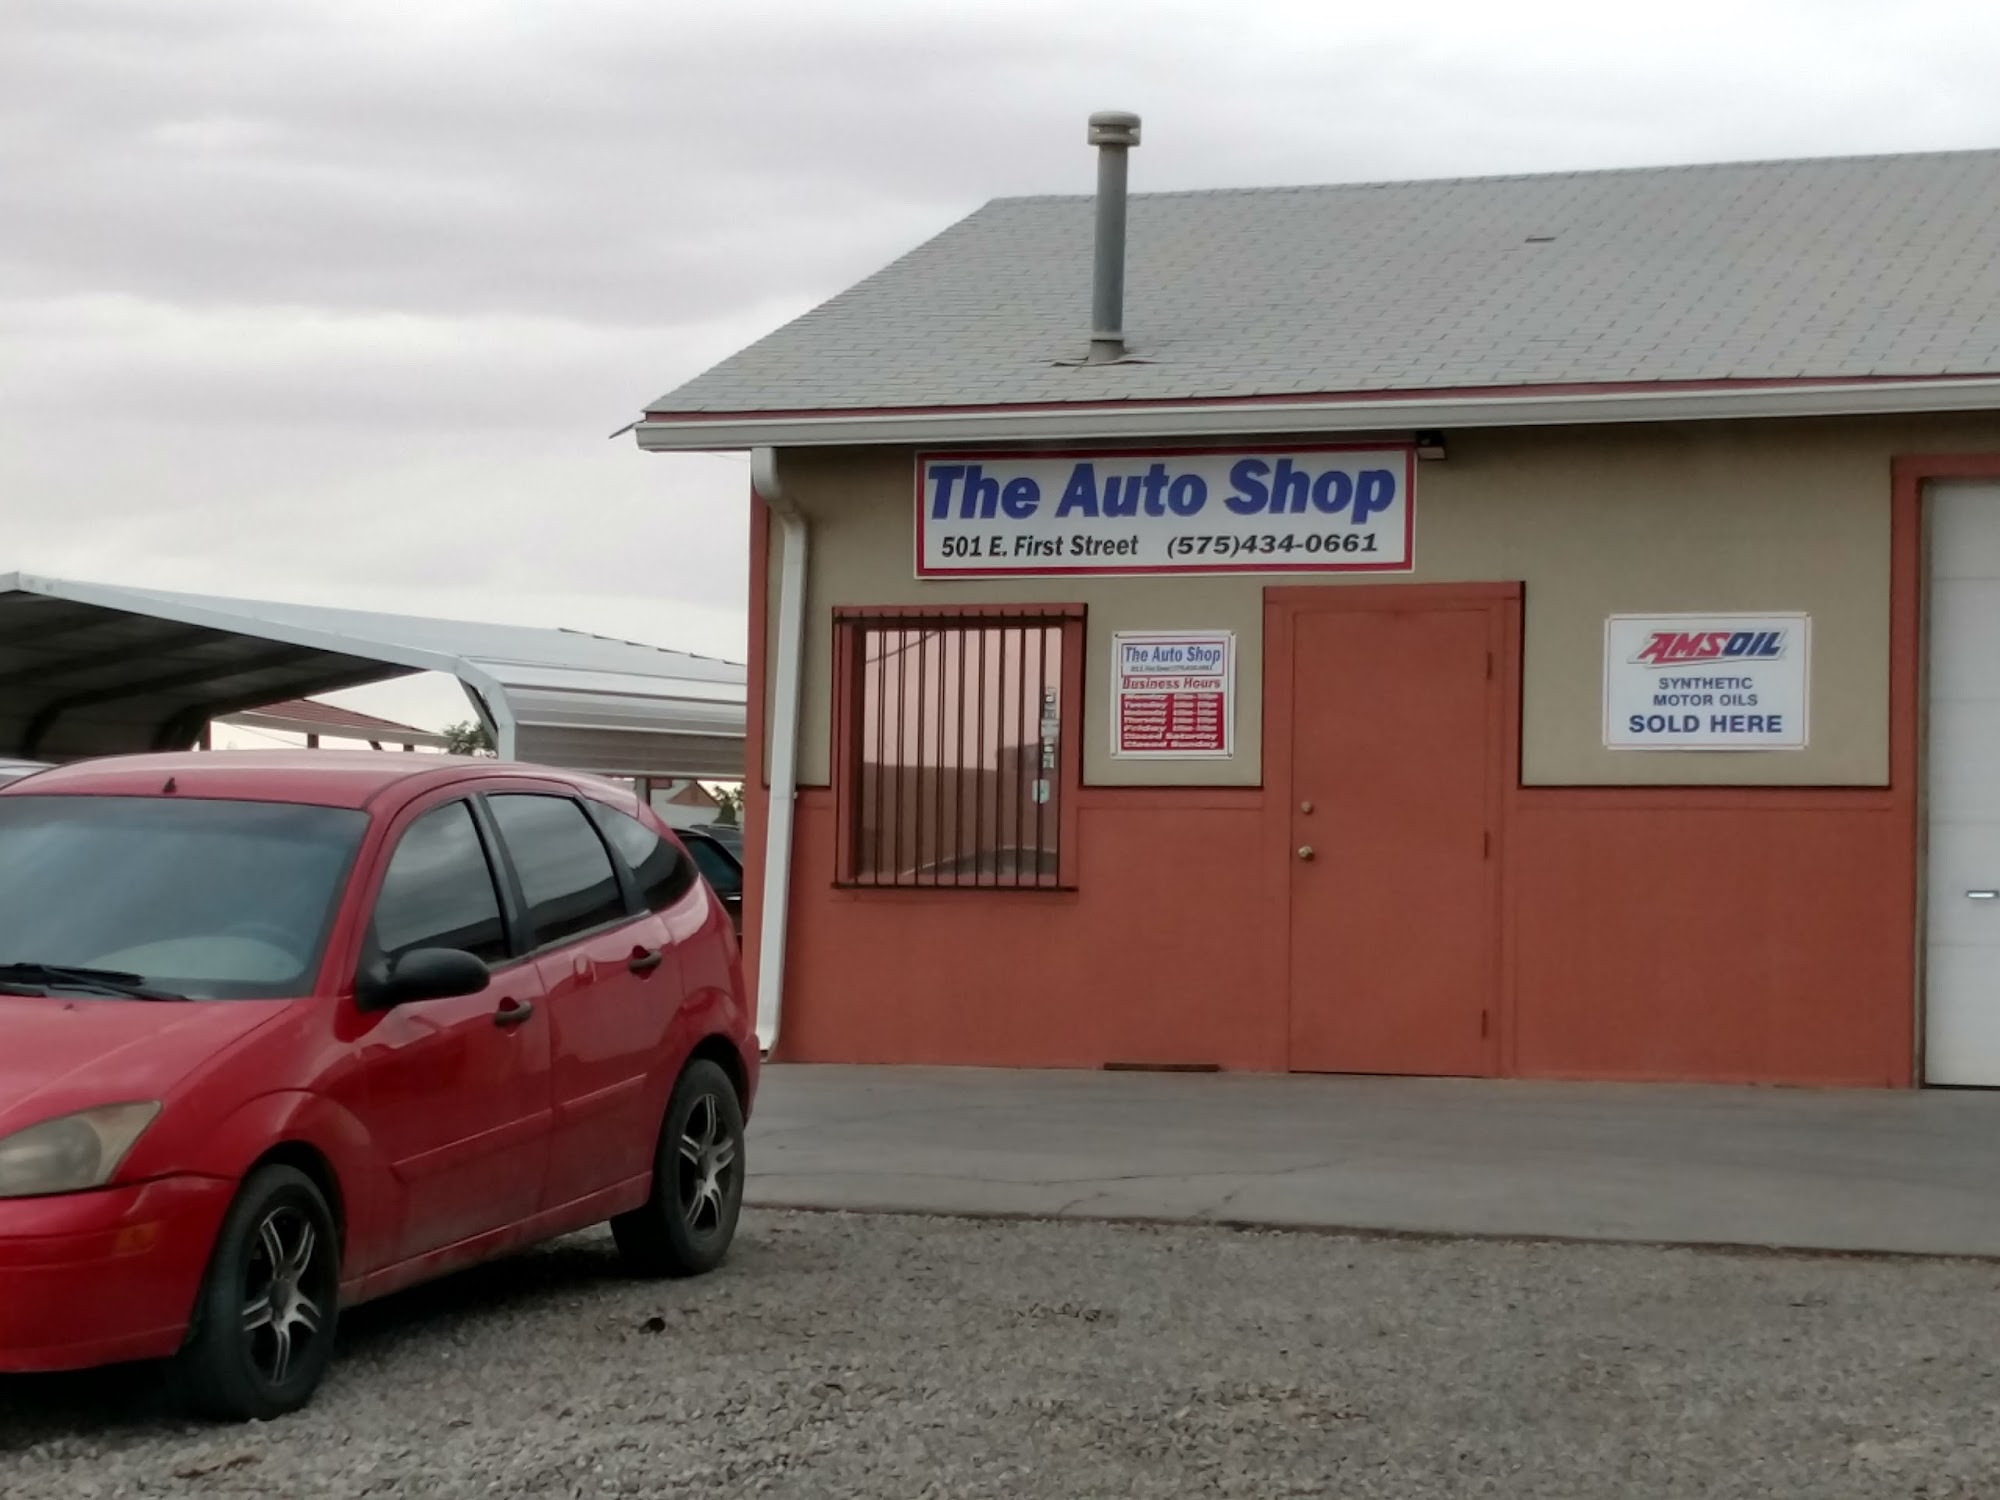 Auto Shop